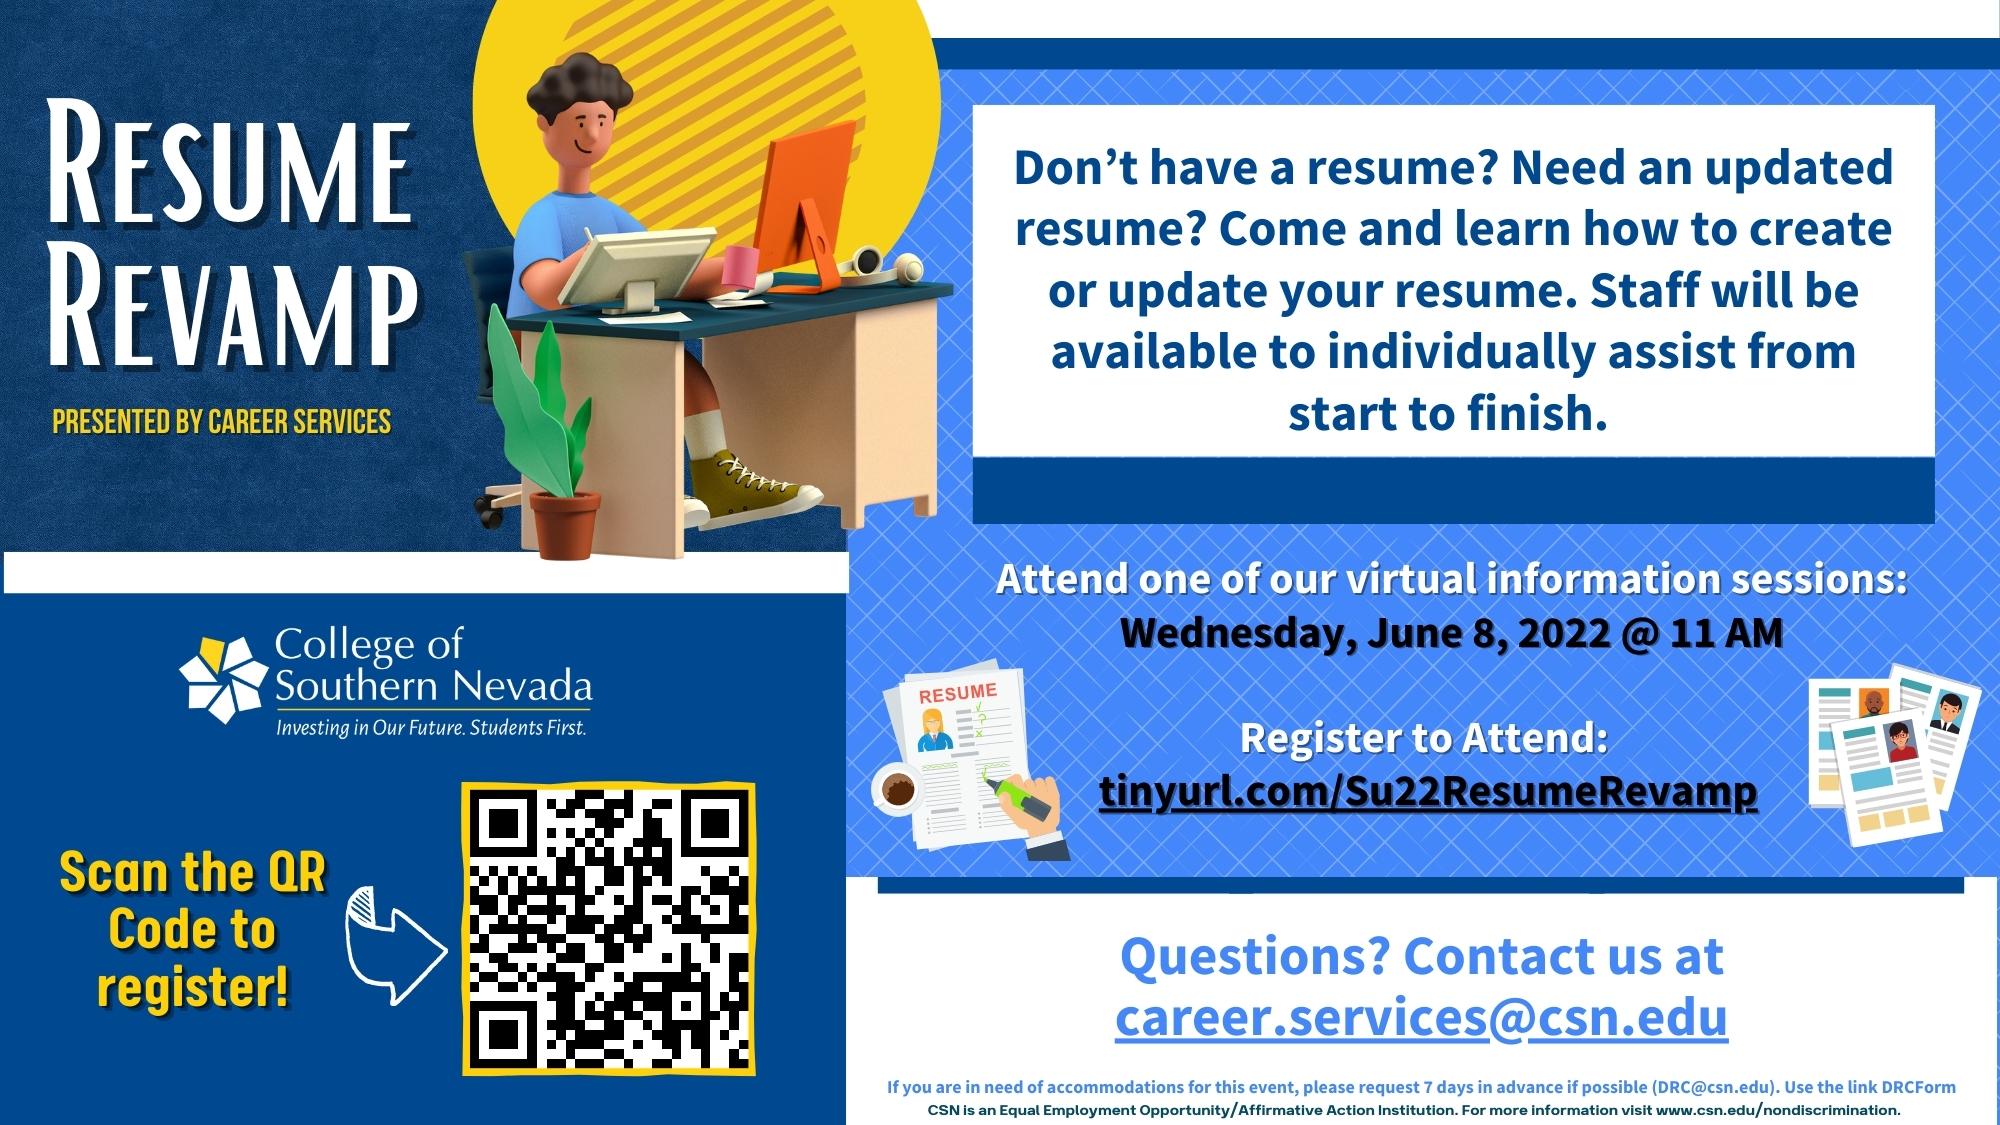 Event flyer for resume revamp on June 8, 2022